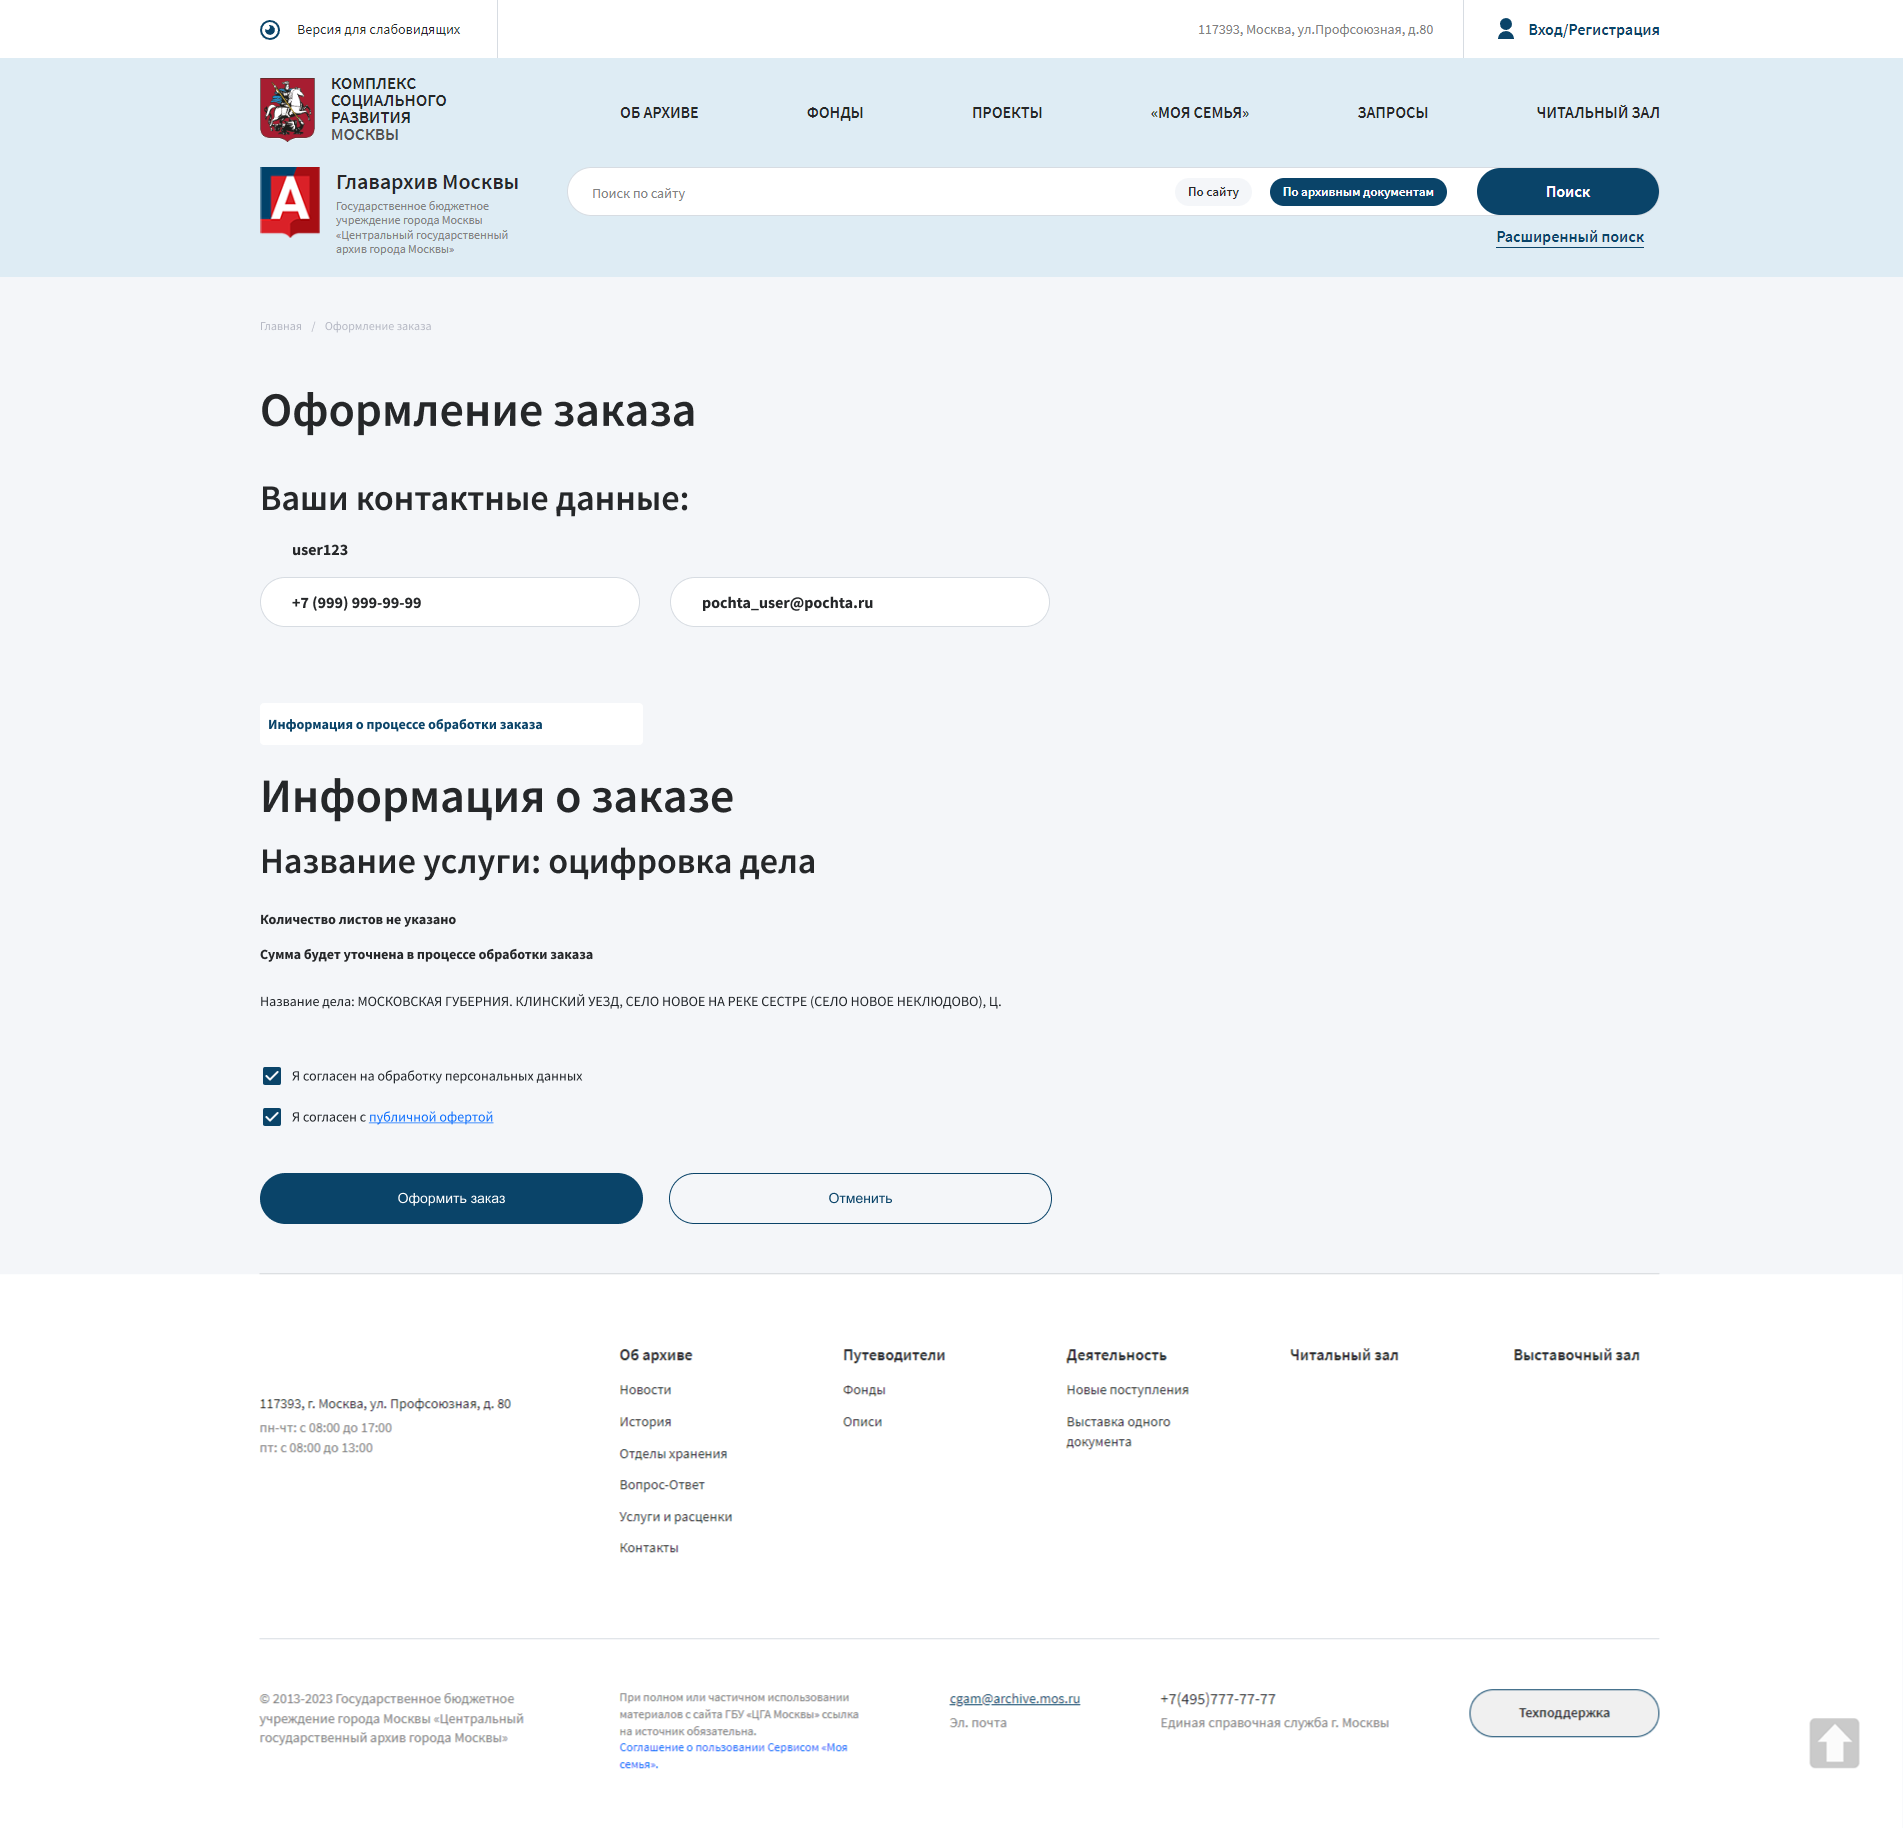 развитие и эксплуатация интернет-сайтов гбу «цга москвы»